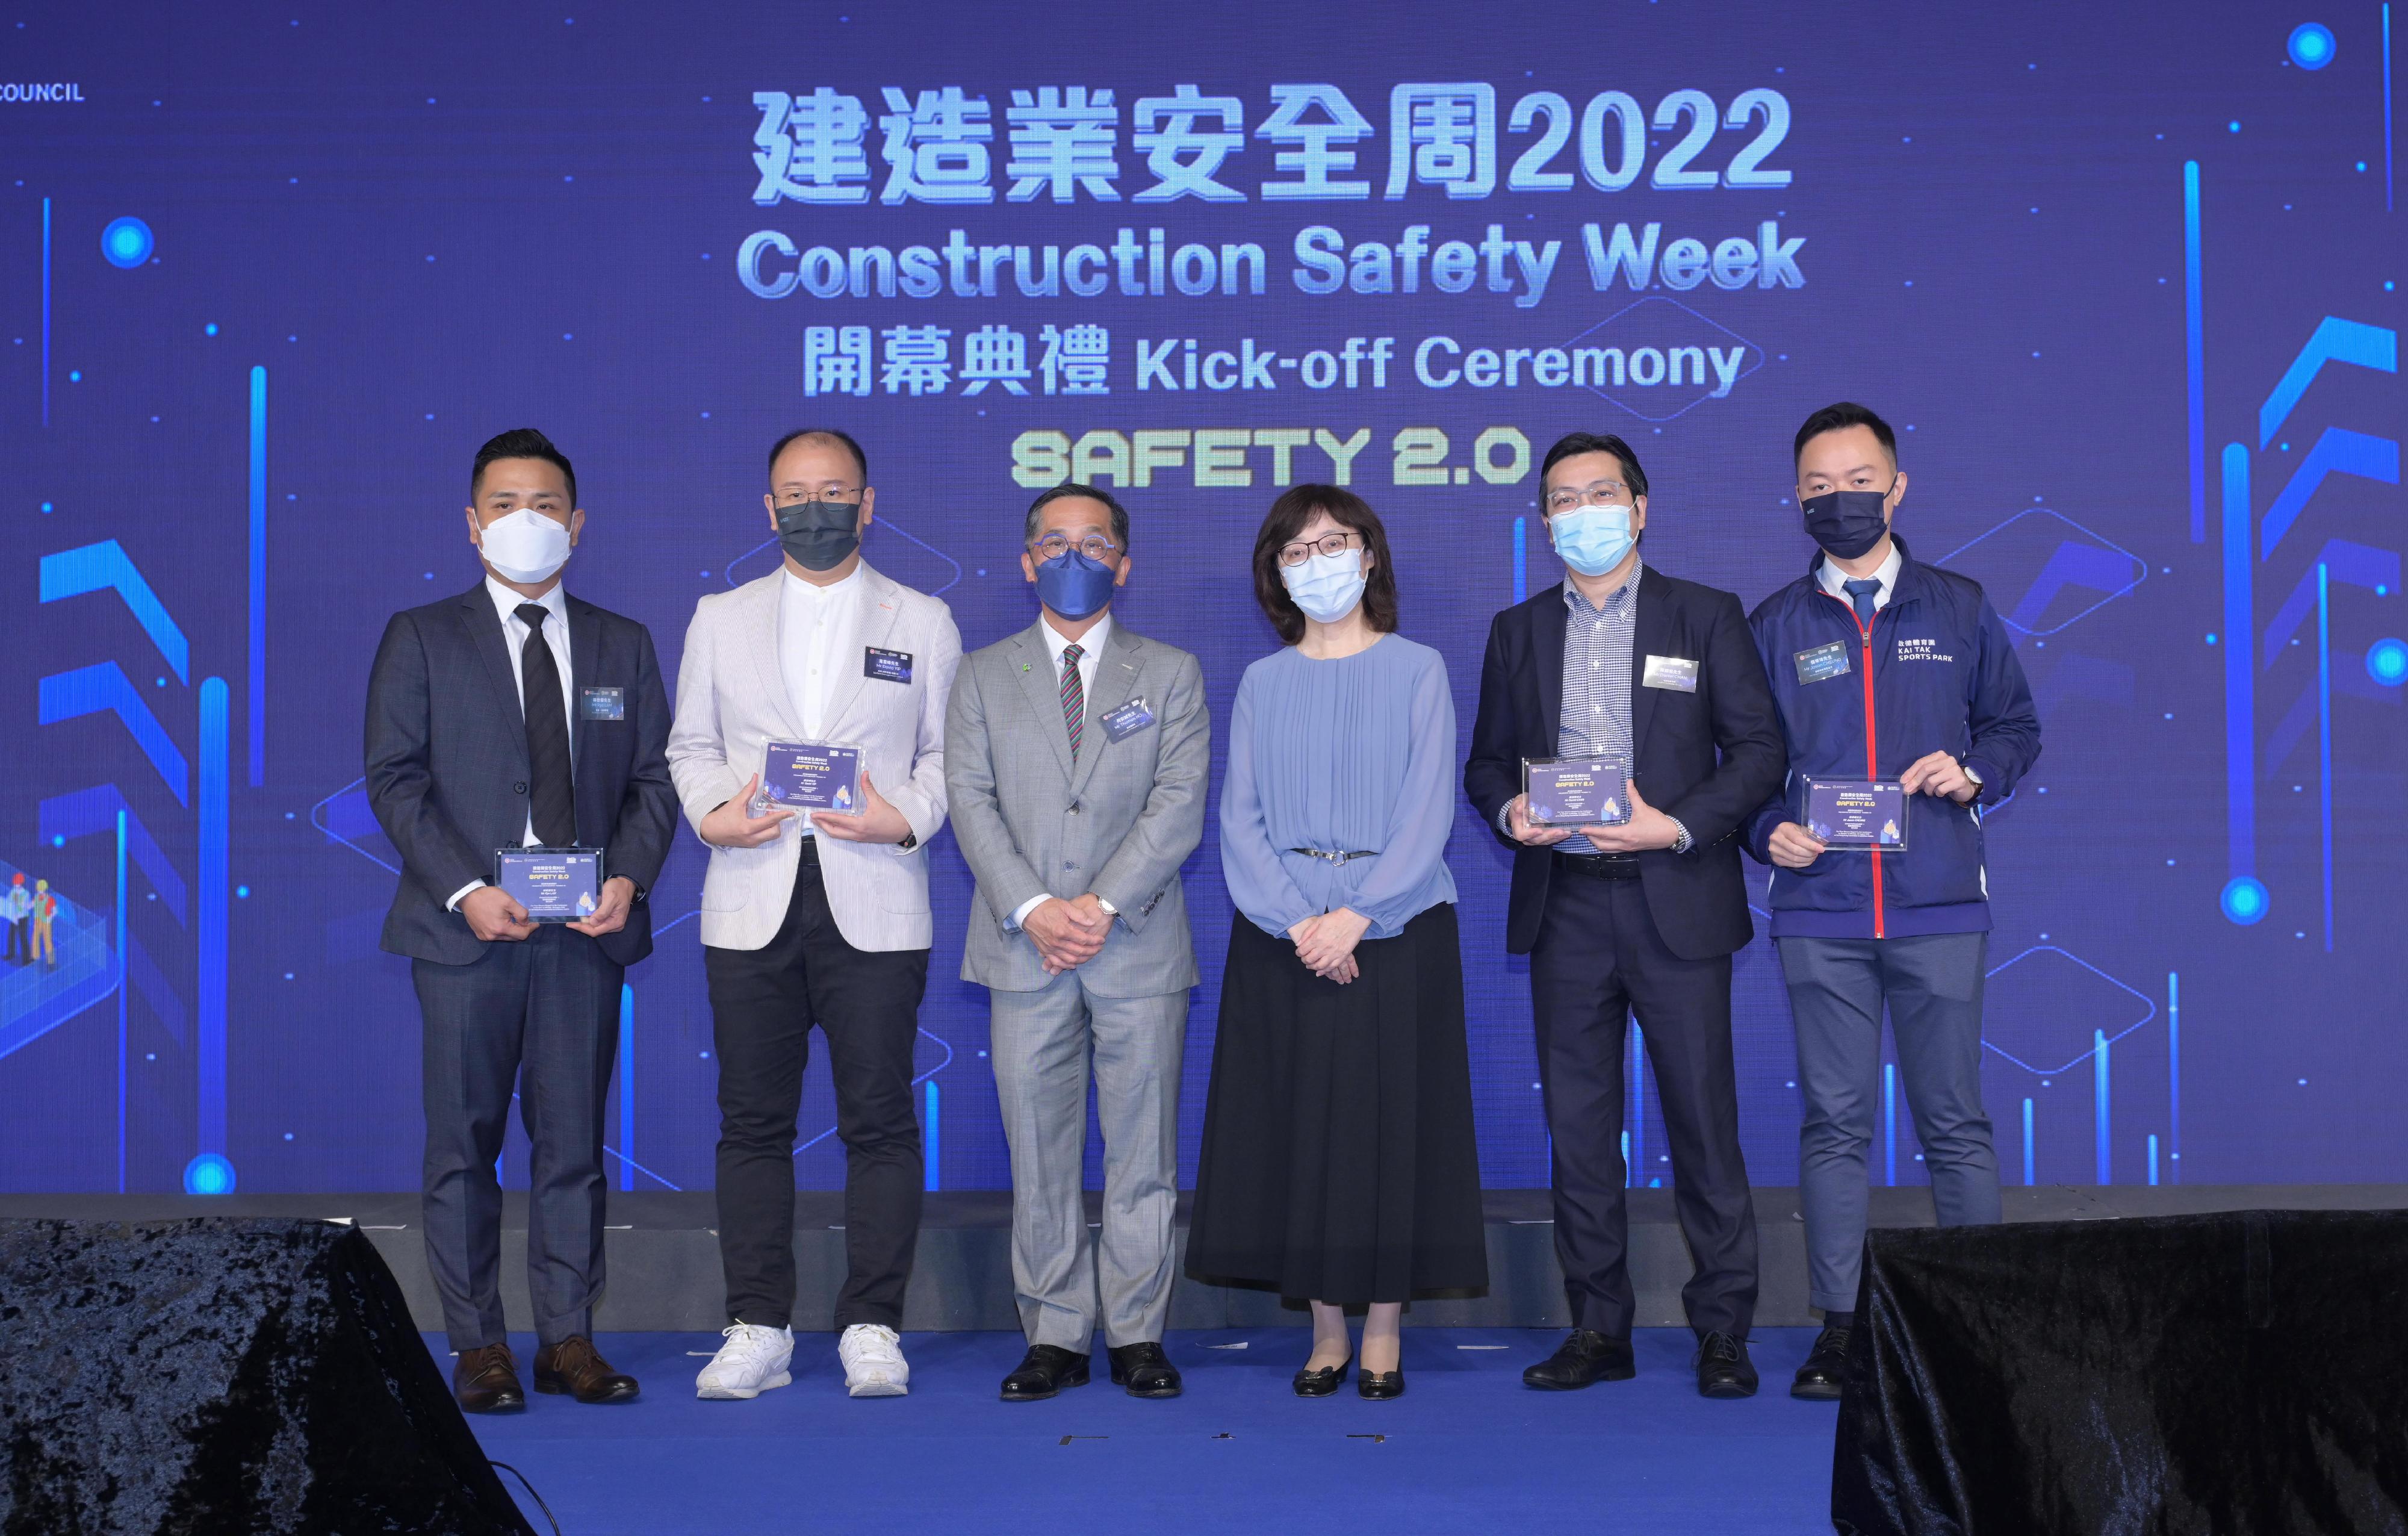 「建造业安全周2022」今日（八月二十九日）至九月二日举行。图示发展局局长甯汉豪（右三）和建造业议会主席何安诚（左三）向「建造业安全周2022」的研讨会讲者致送纪念品。
